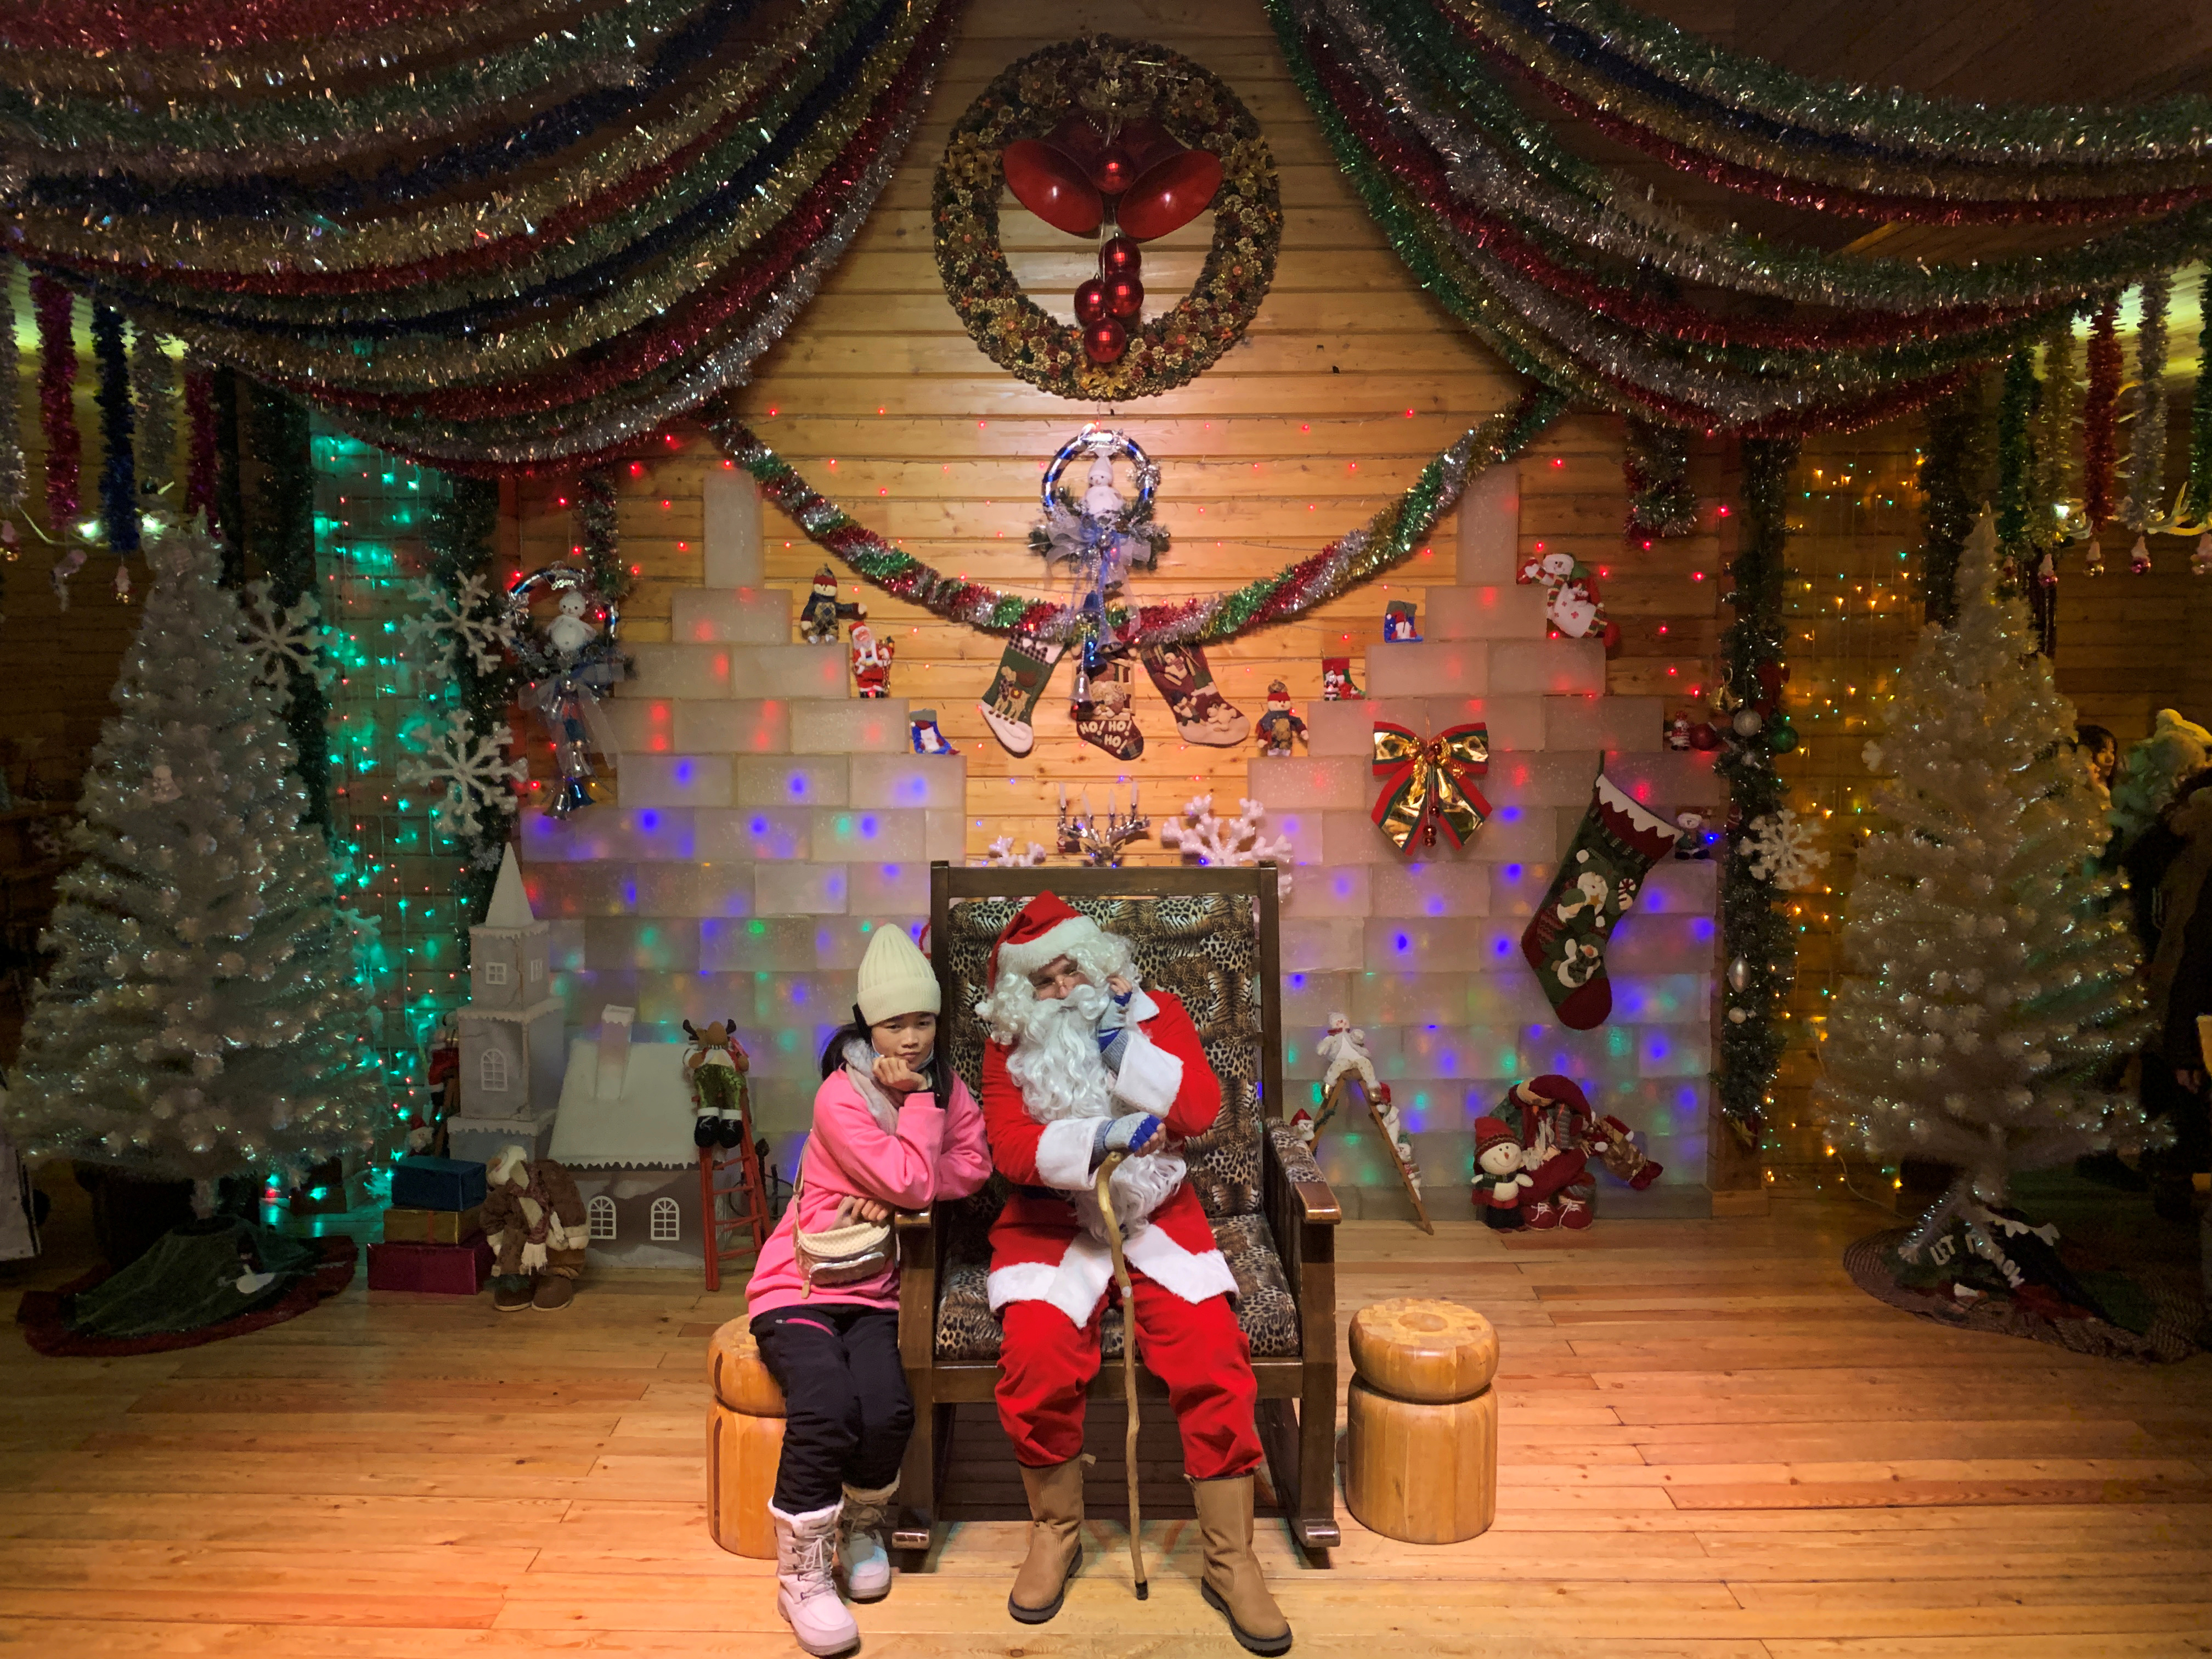 Un visitante posa con un Papá Noel, interpretado por Ville Haapassallo, de 35 años, de Finlandia, dentro de la Casa de Papá Noel en un parque temático de Navidad en las afueras de Mohe, la ciudad más septentrional de China, en la provincia de Heilongjiang (REUTERS/Xihao Jiang)